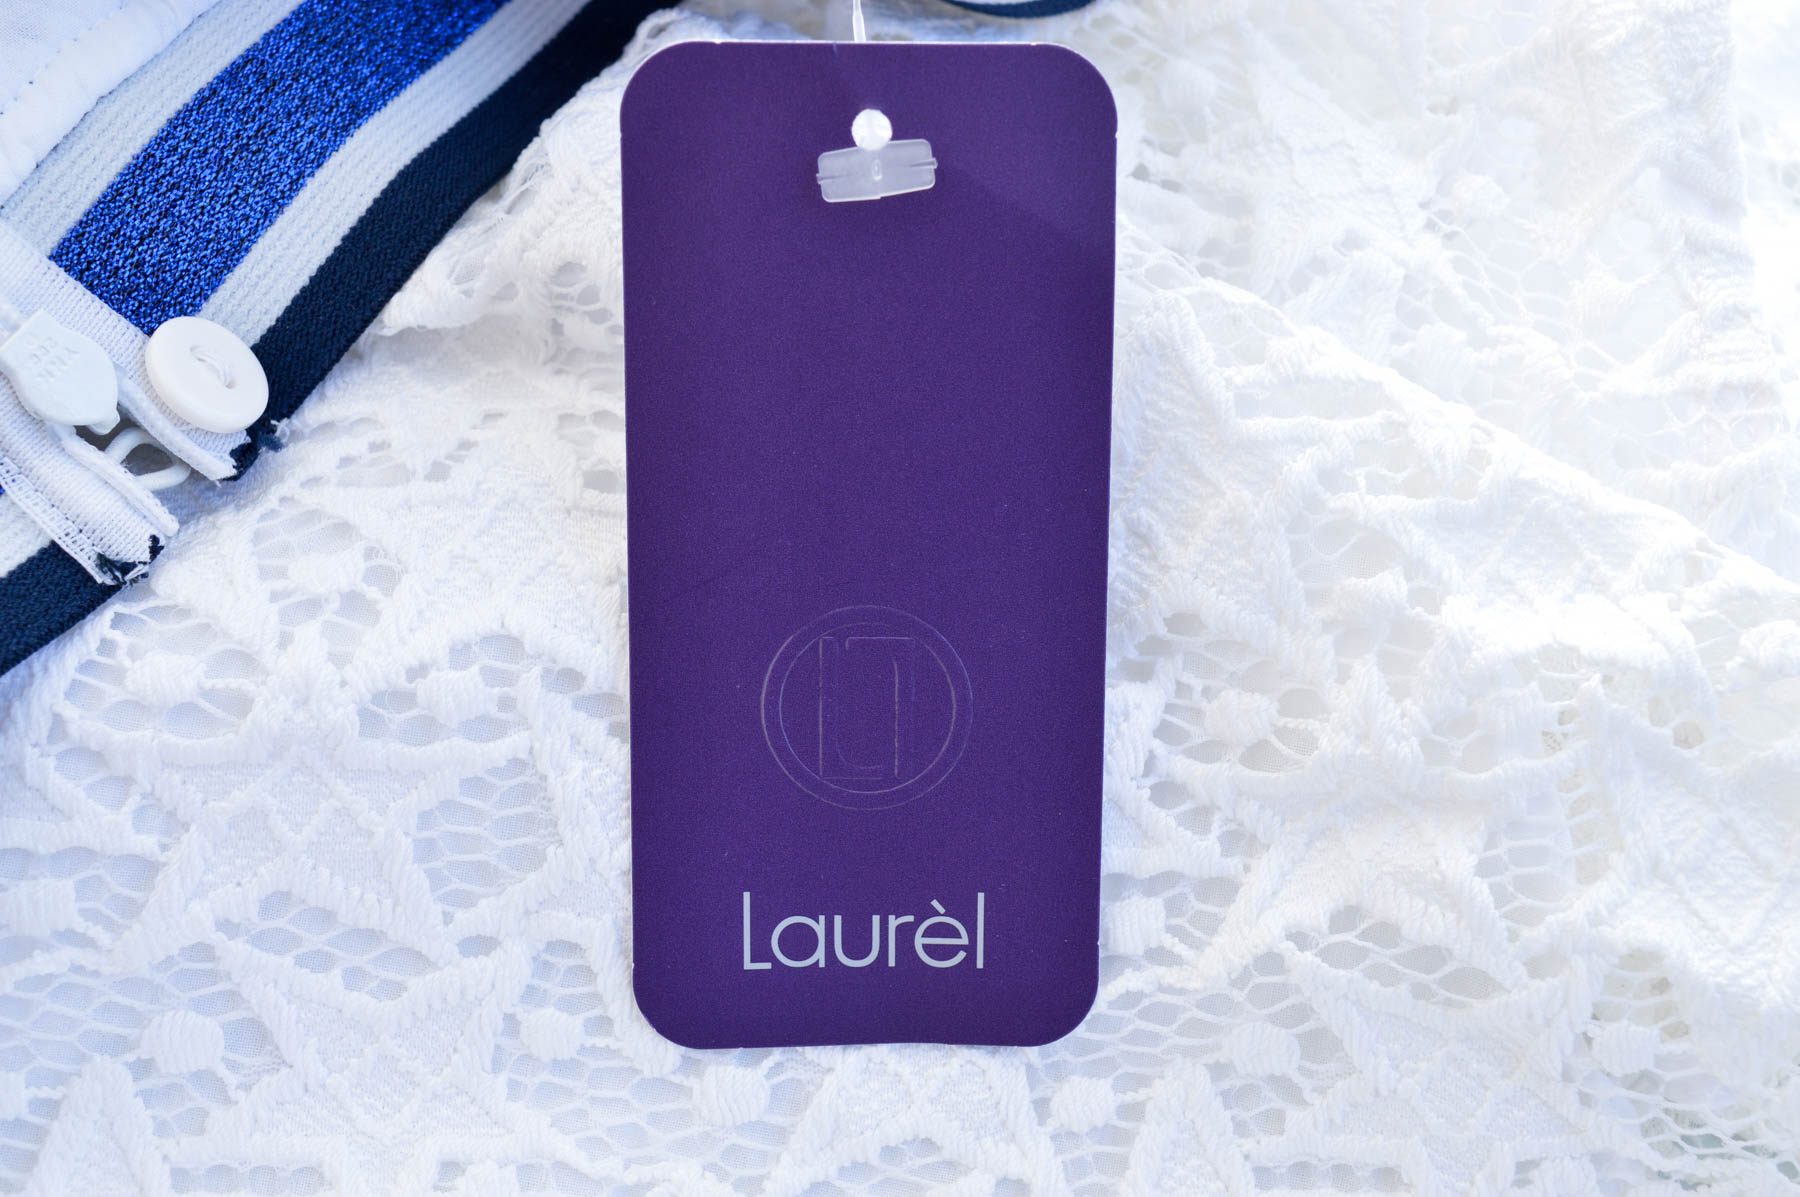 Spódnica - Laurel - 2